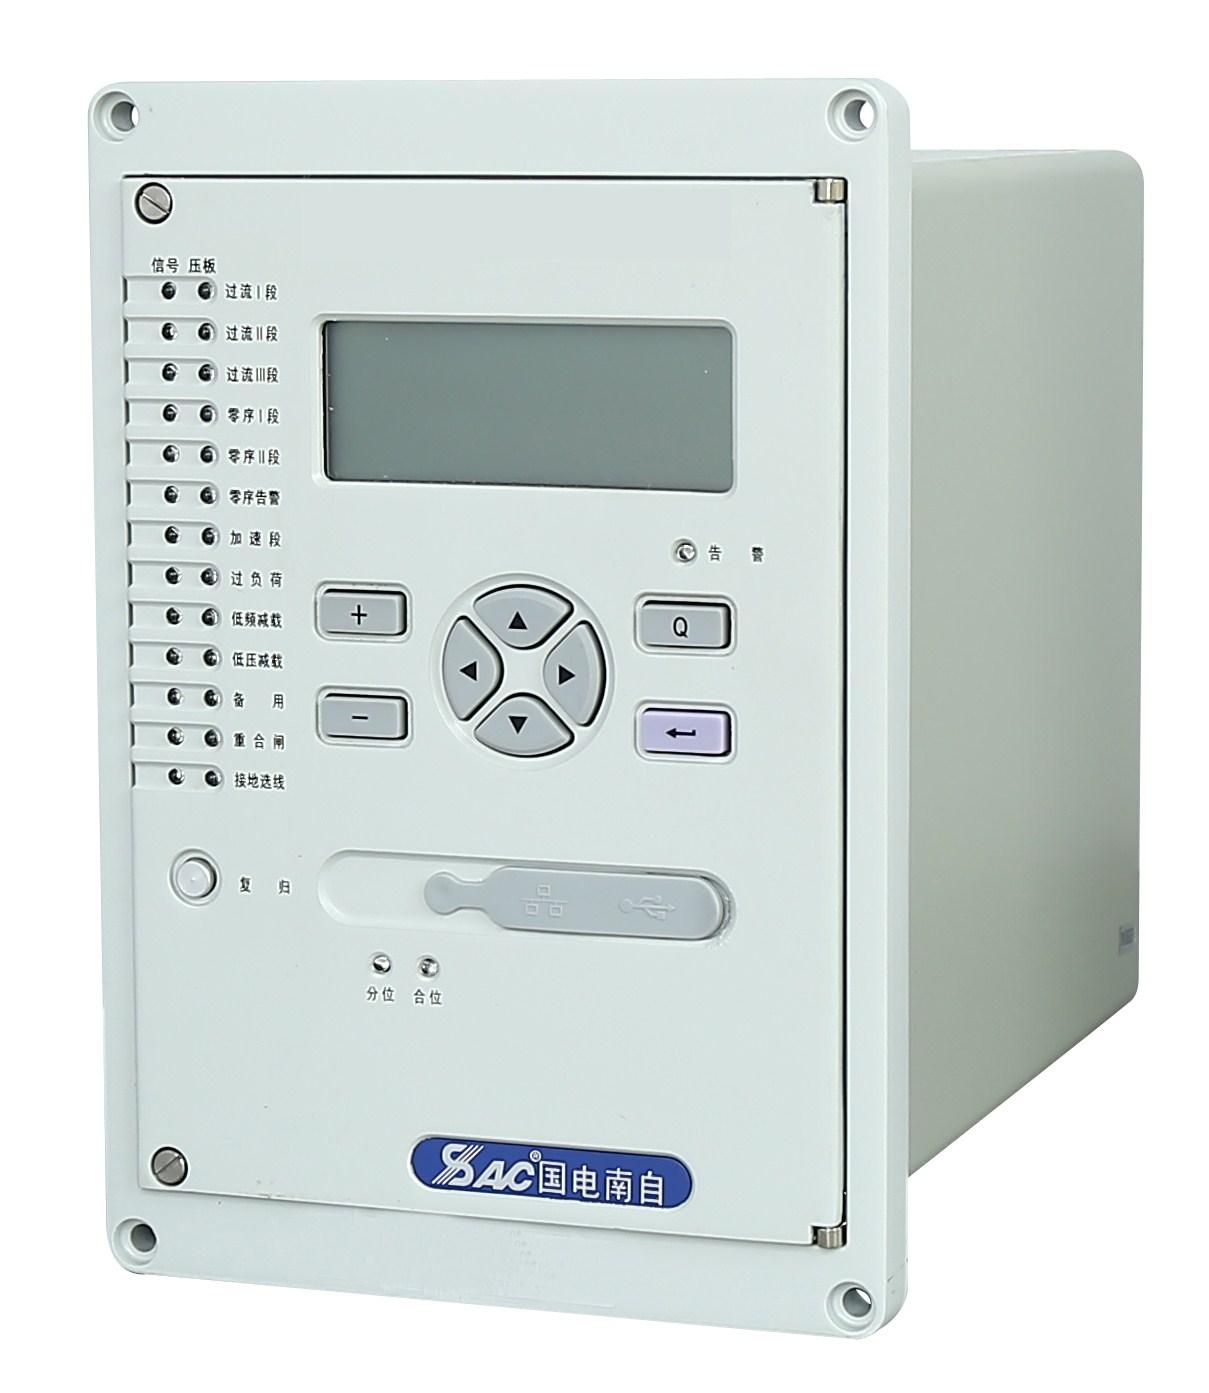 国电南自PST641U 变压器差动保护装置